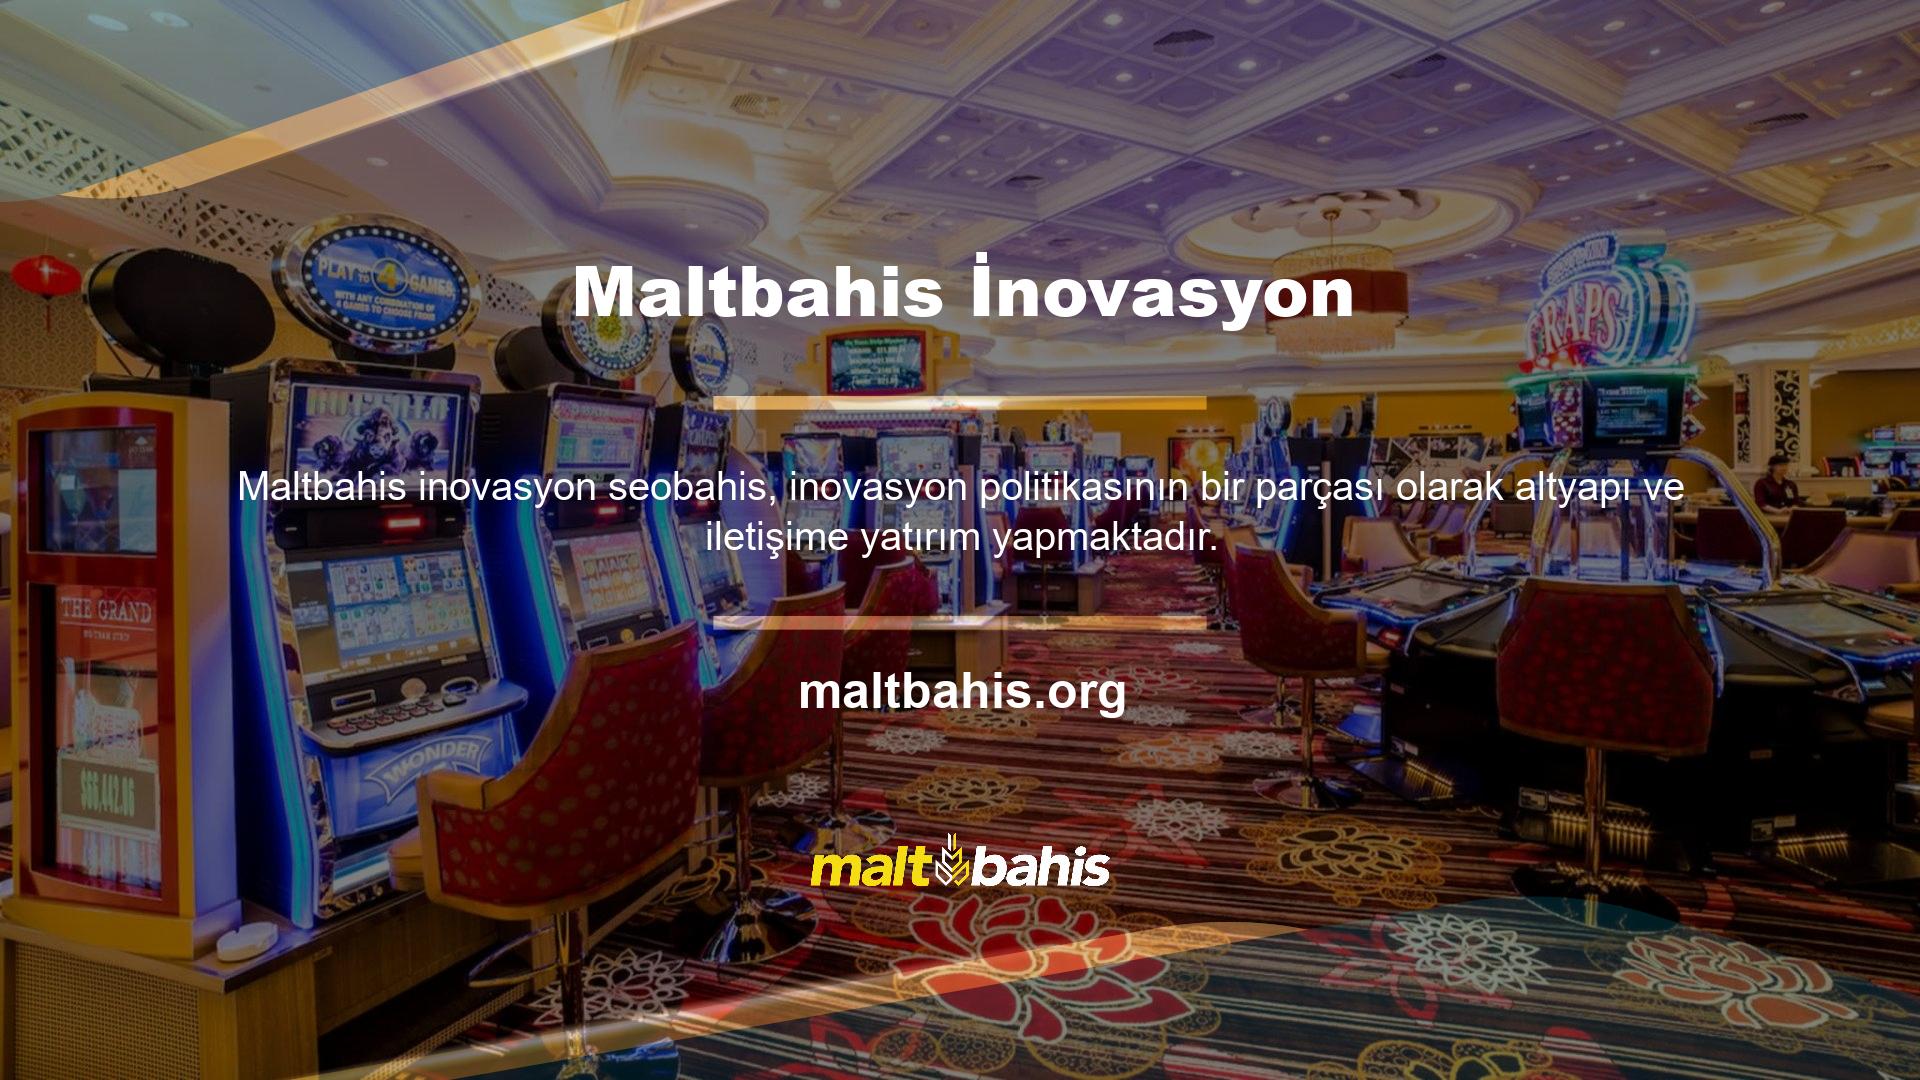 Bu yatırım sayesinde üyeler Maltbahis iletişim bilgi noktalarından aktif olarak faydalanmaktadır